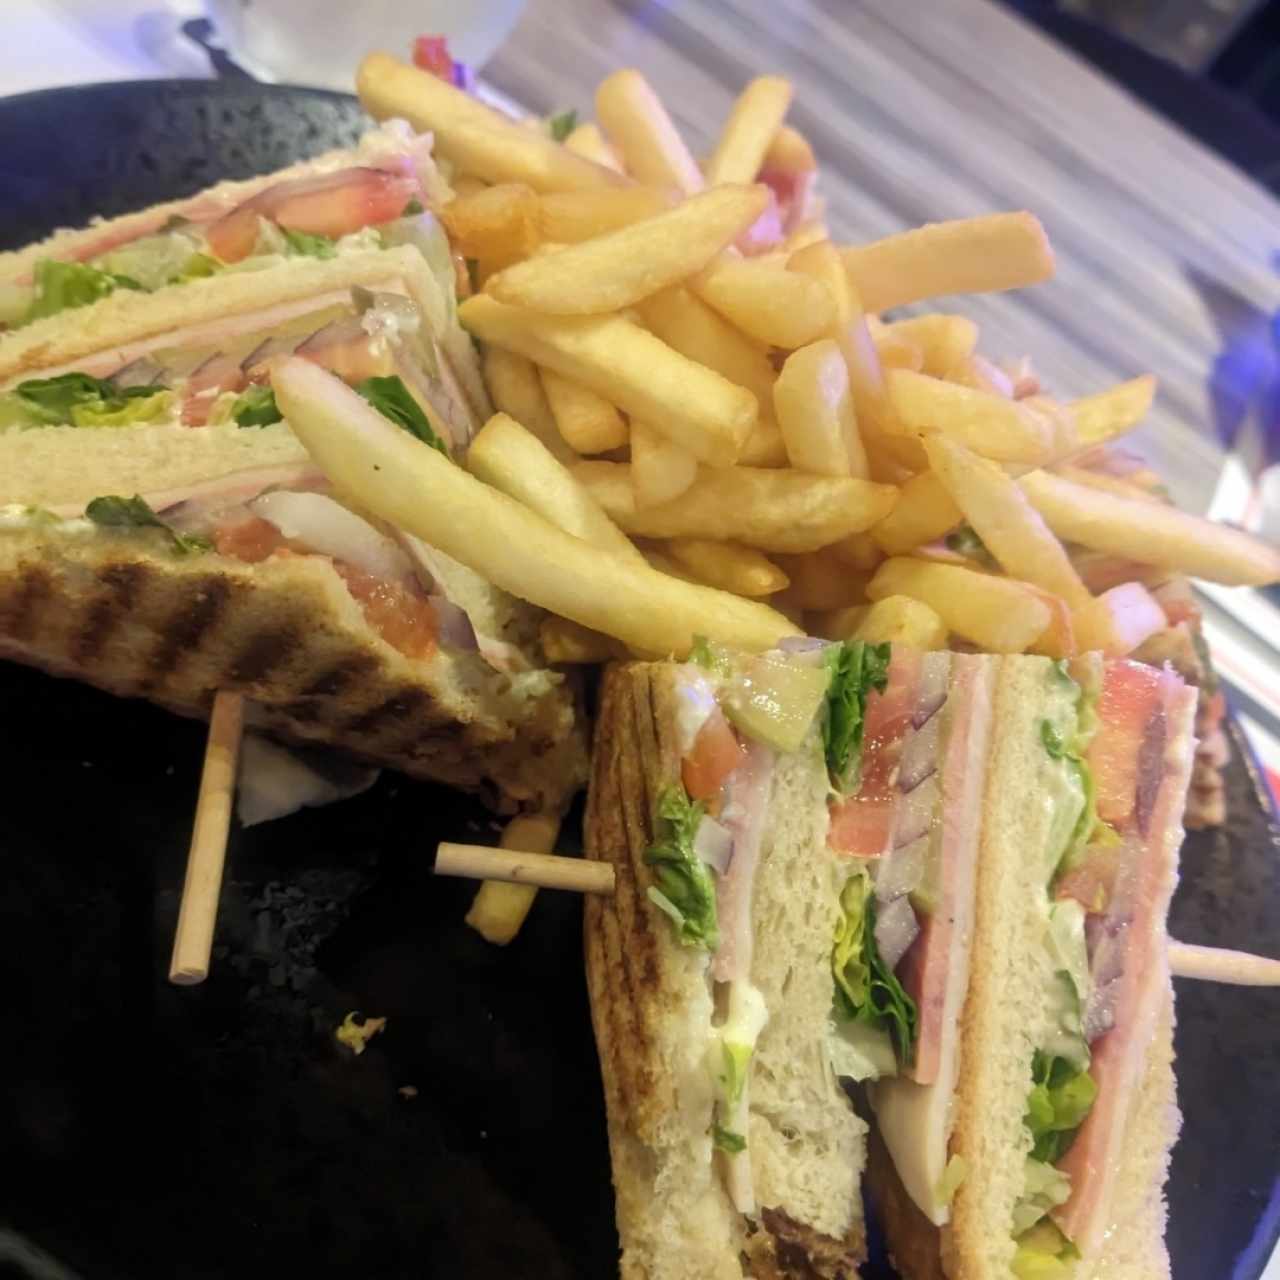 Emparedados - Club sándwich